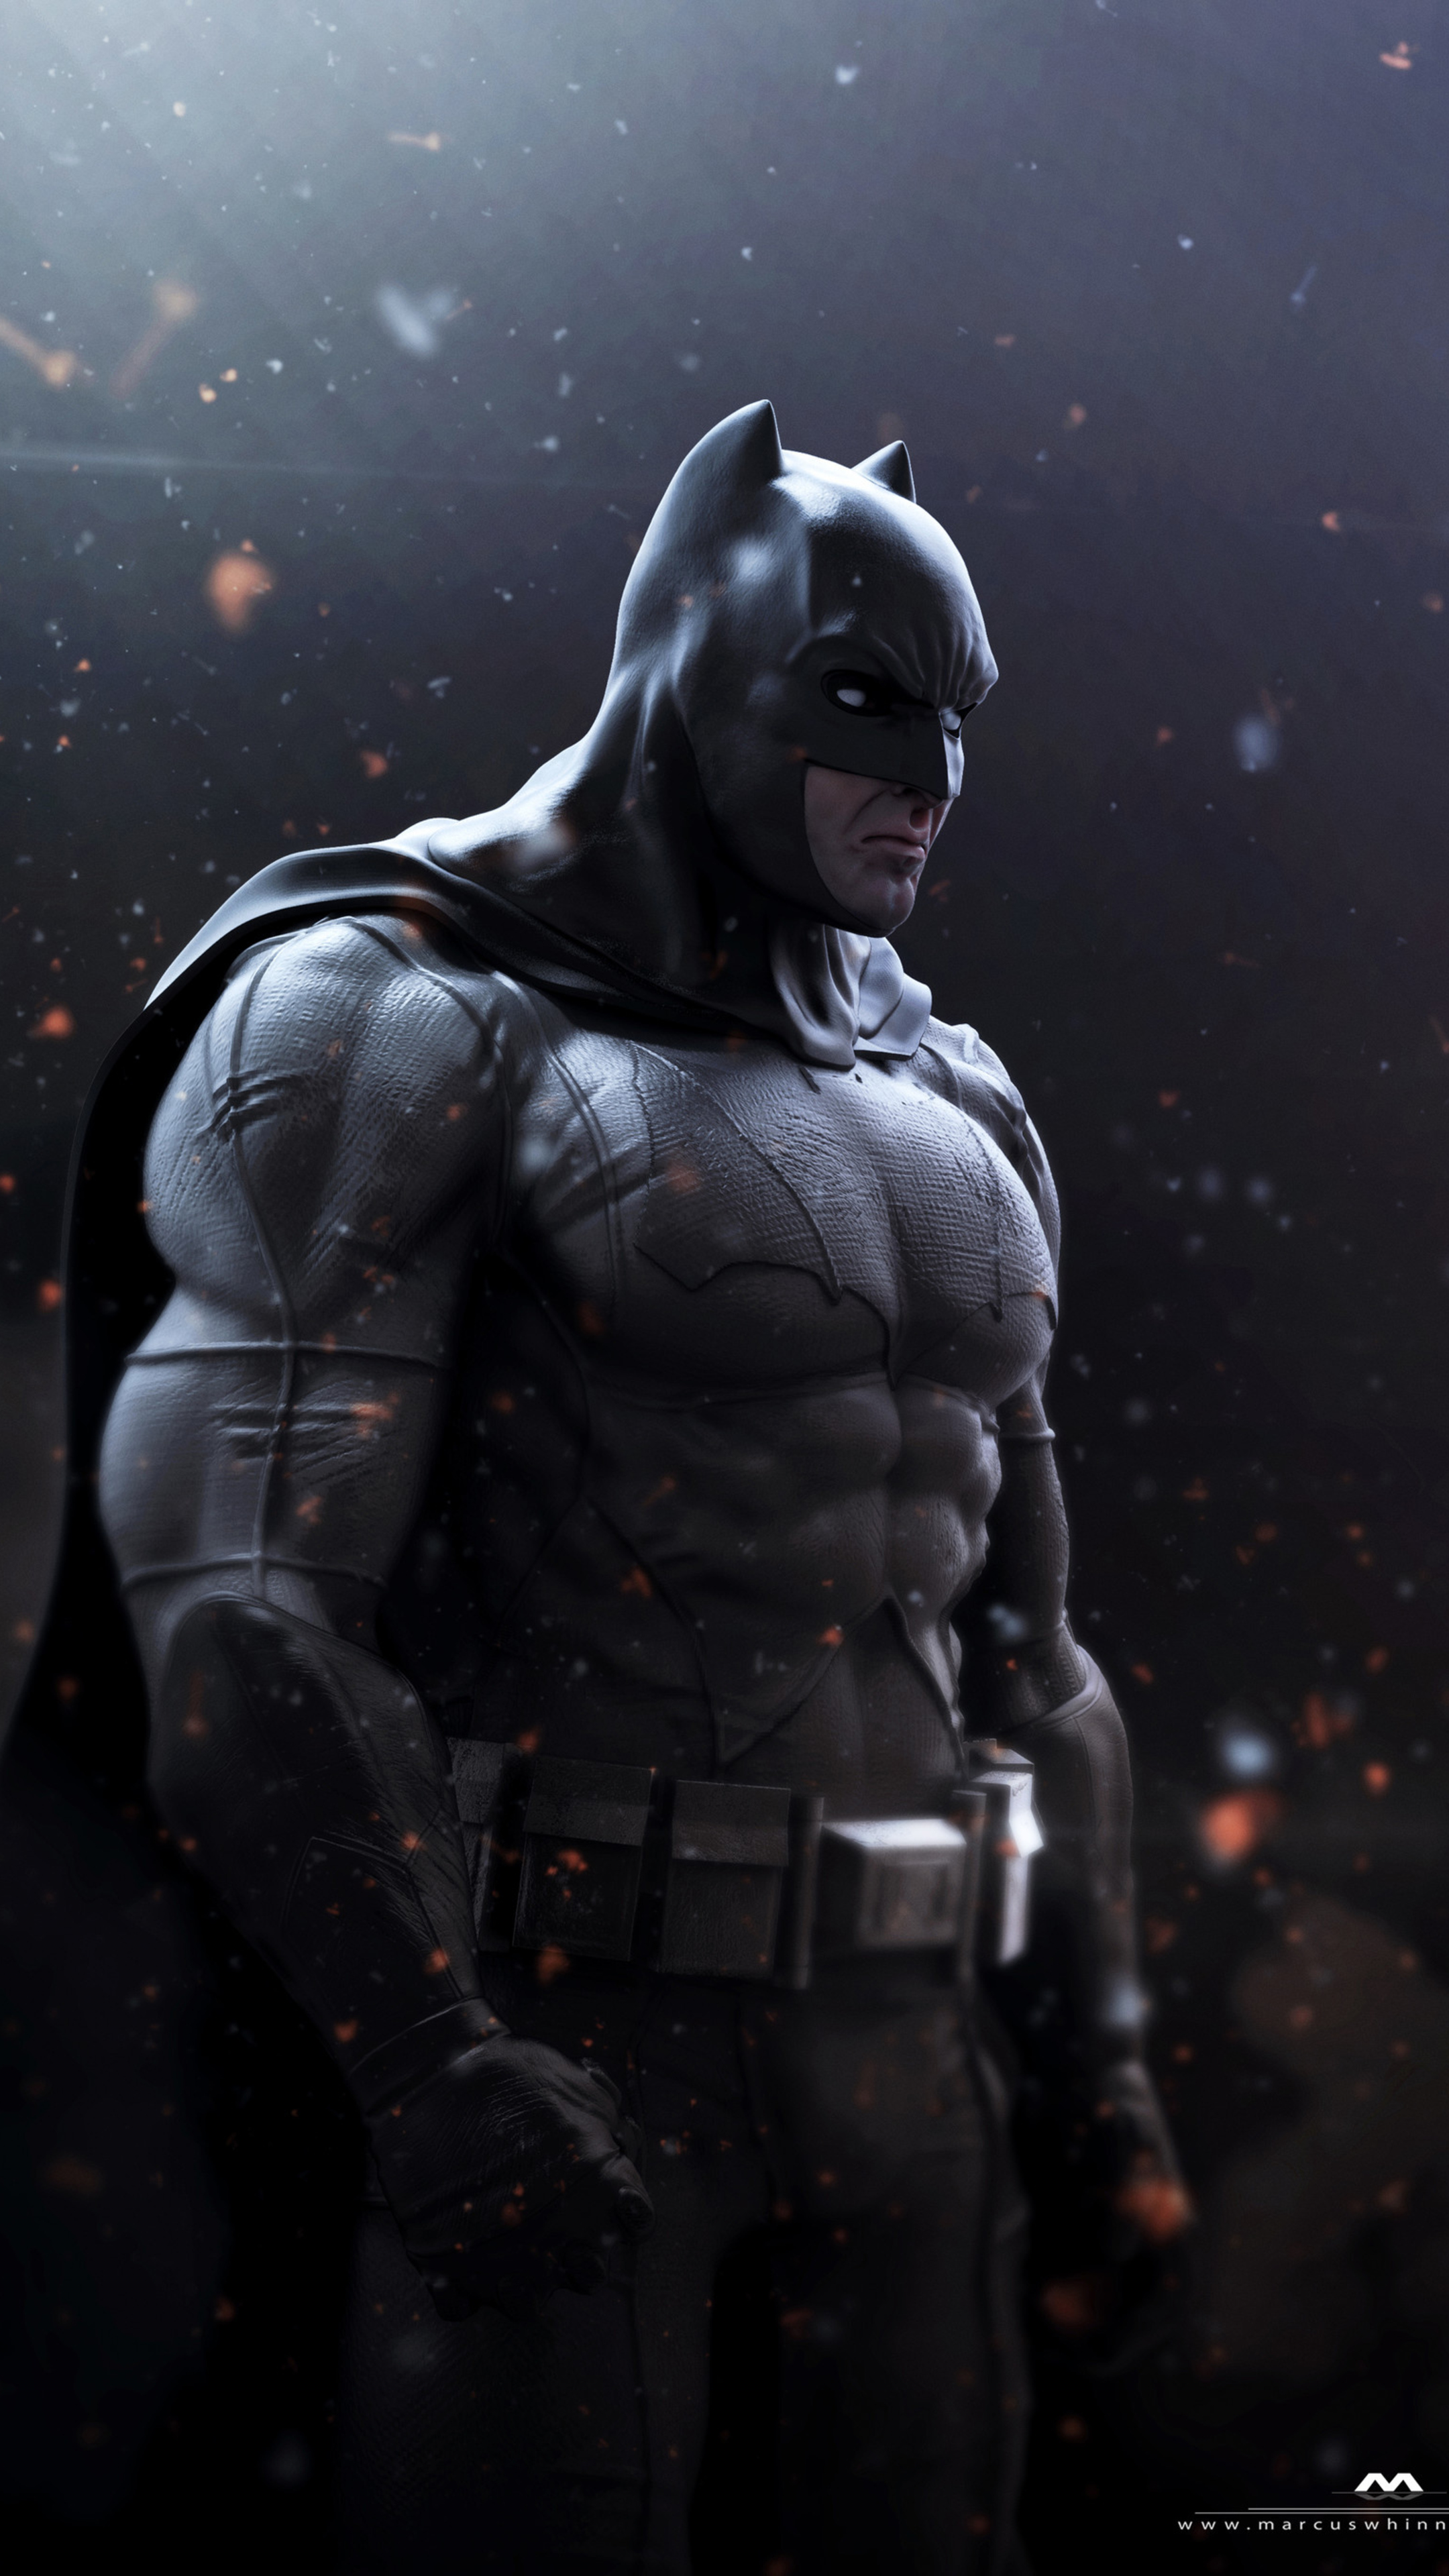 R batman. Бэтмен Аркхем Супермен. Бэтмен крутой. Бэтмен крутой арт. Бэтмен со спины.